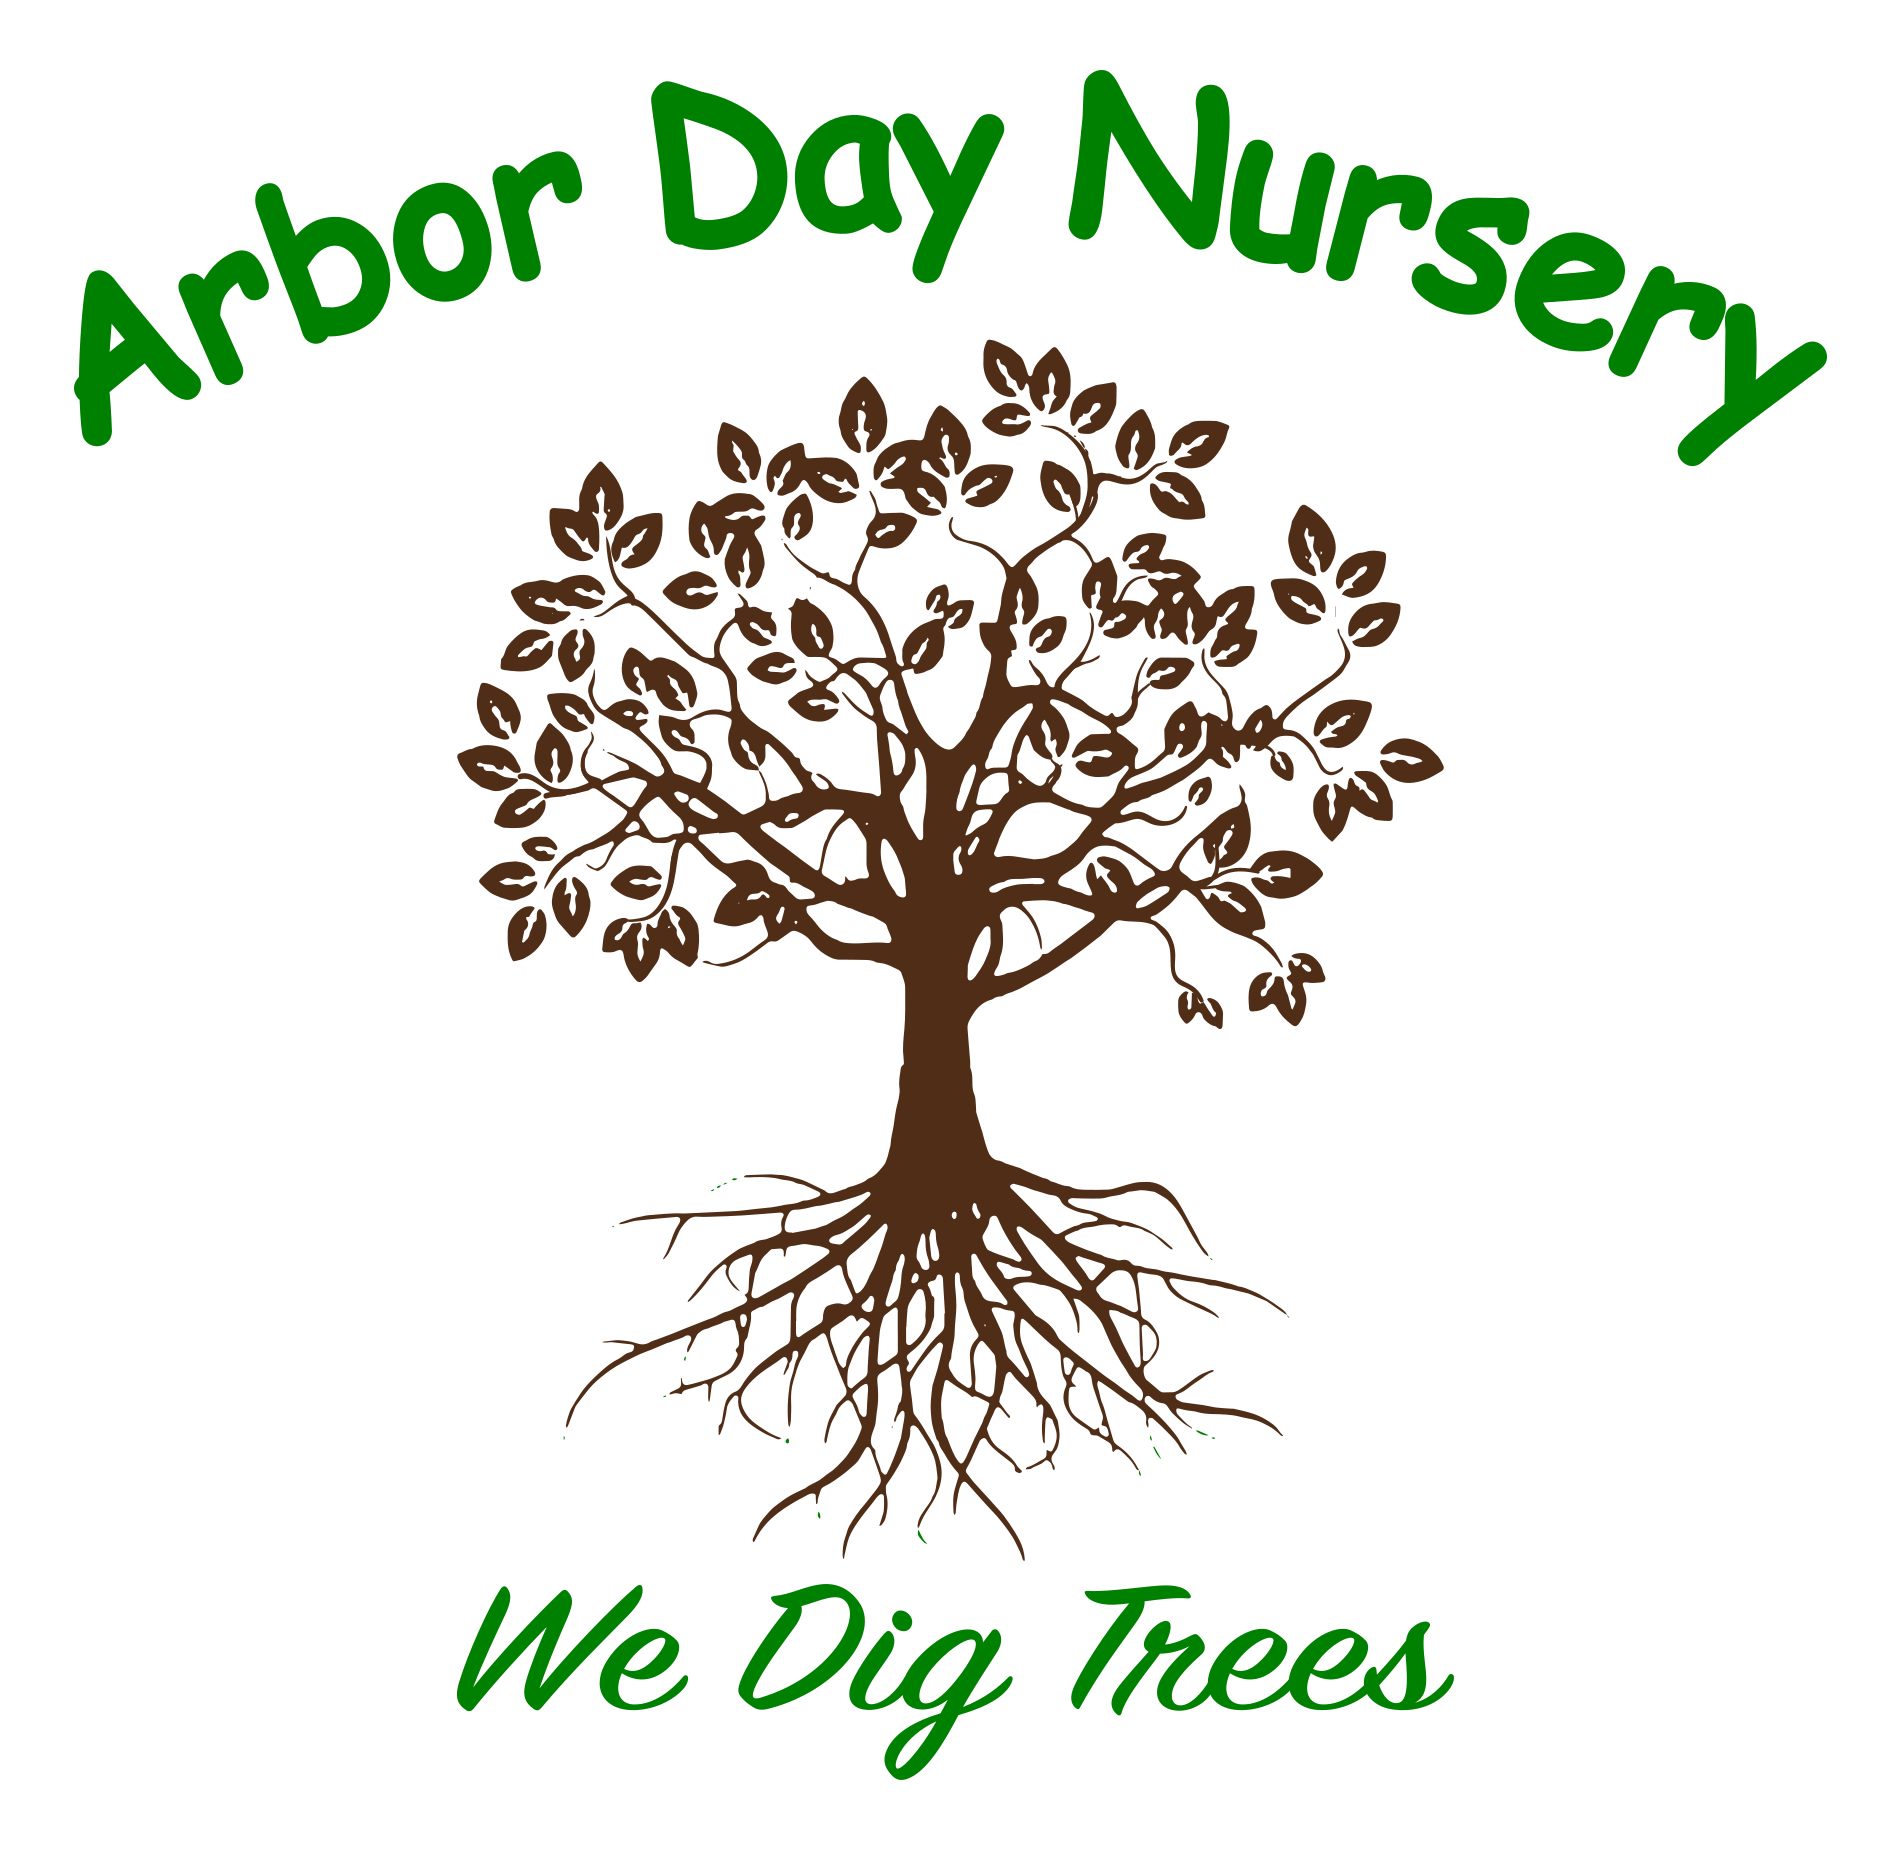 arbordaynurserylogonewglow Arbor Day Nursery Garden Center in